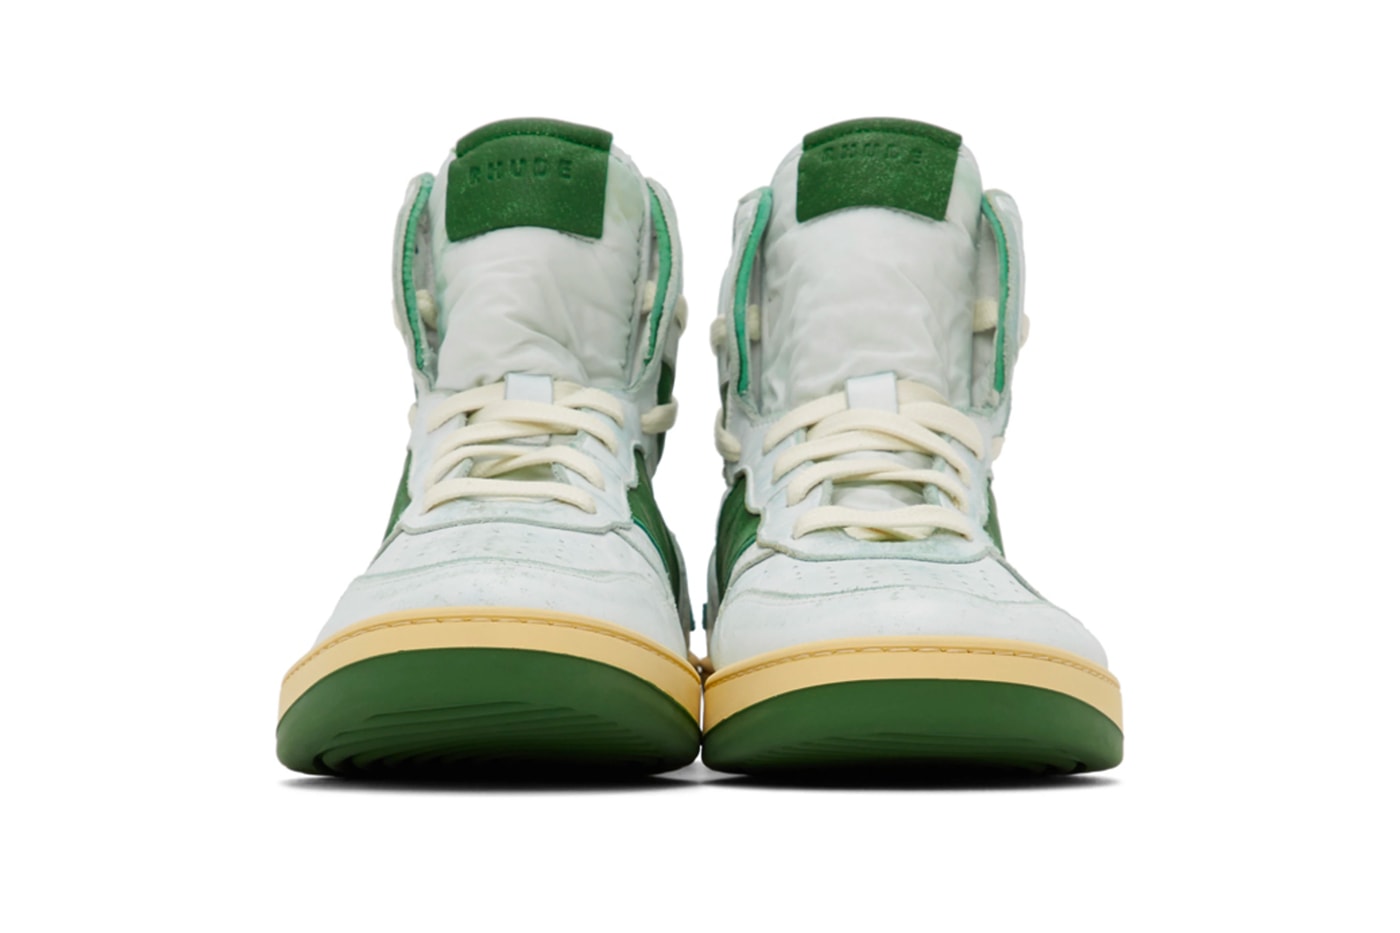 RHUDE Retro Bball Hi Sneakers White Green Grey Release Info Buy Price rhuigi villasenor